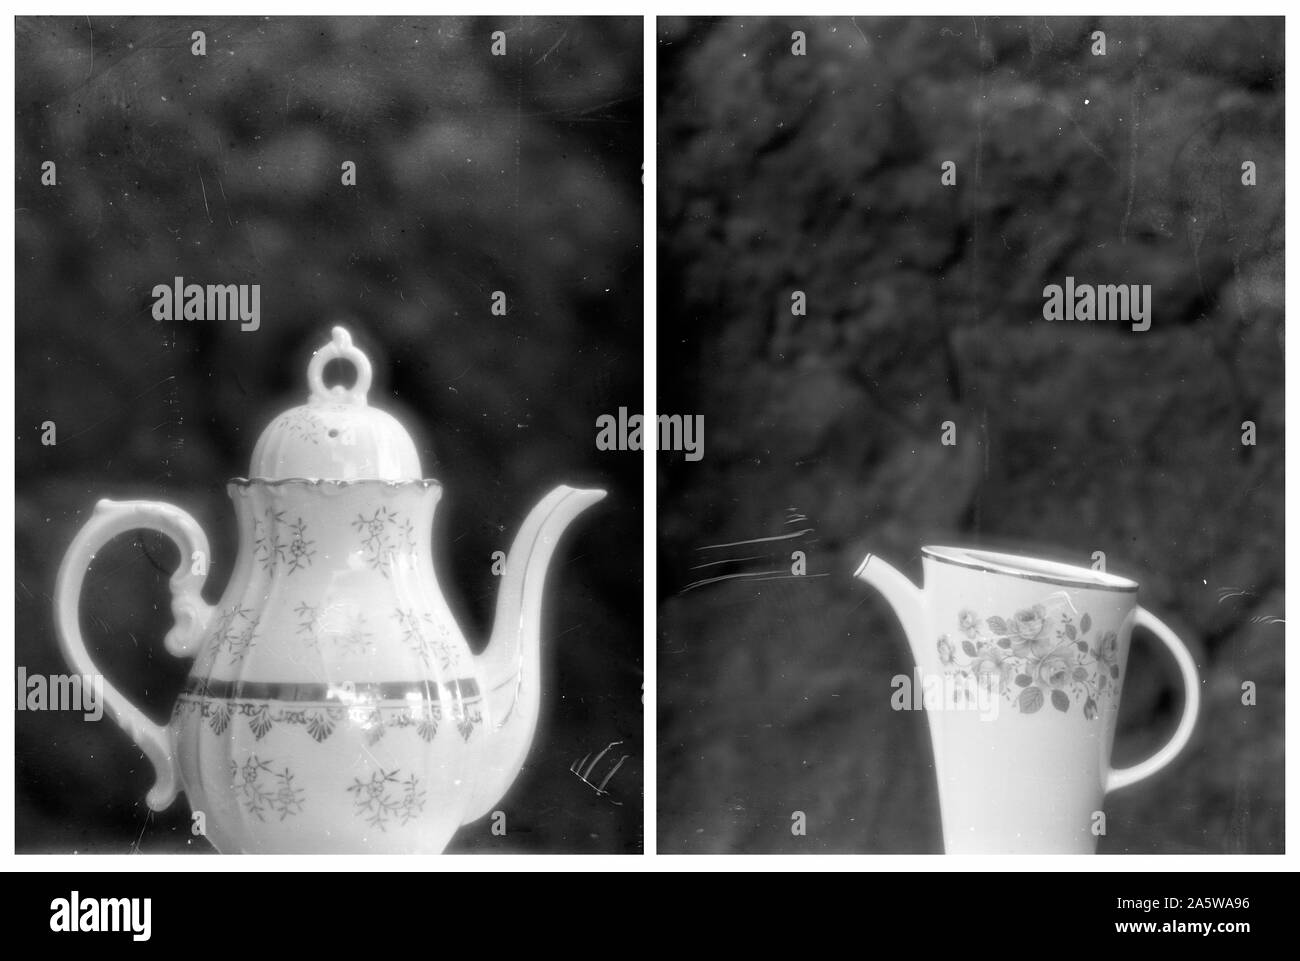 Dittico di due vasi di ceramica. In bianco e nero di medio formato pellicola negativa, graffiato durante lo sviluppo. Soft focus lente. Roccia lavica parete dello sfondo. Foto Stock